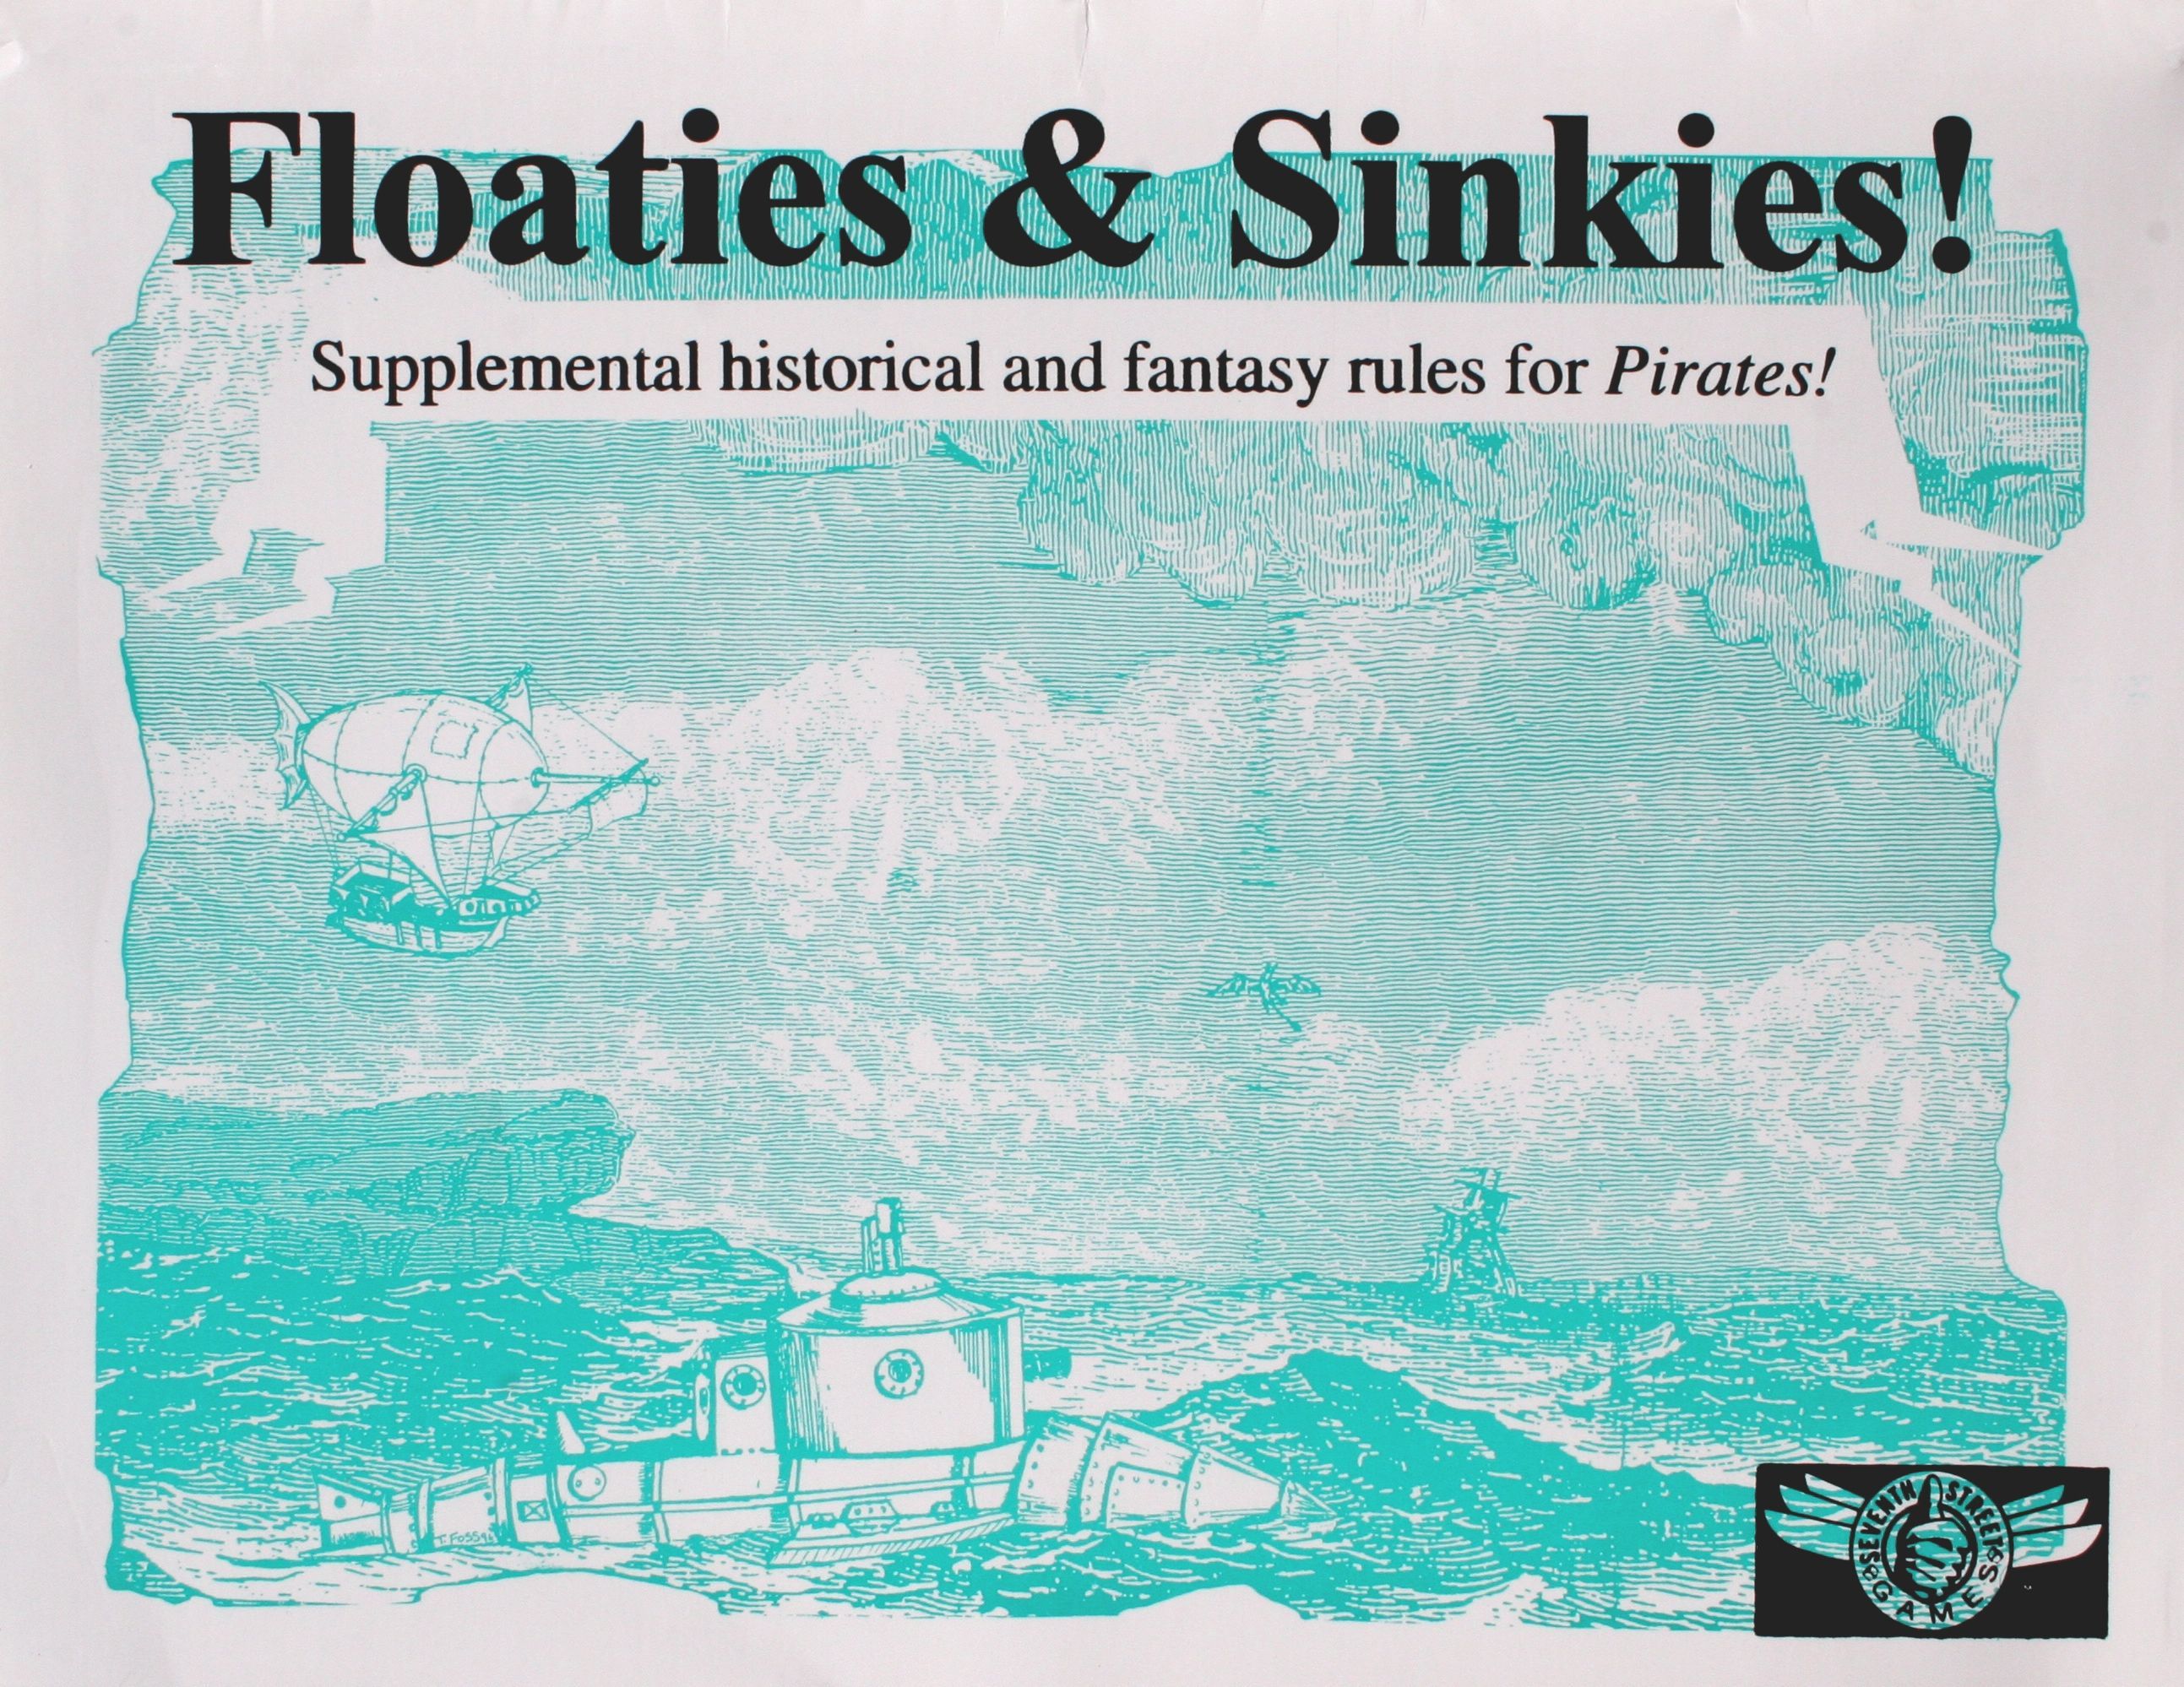 Floaties & Sinkies!